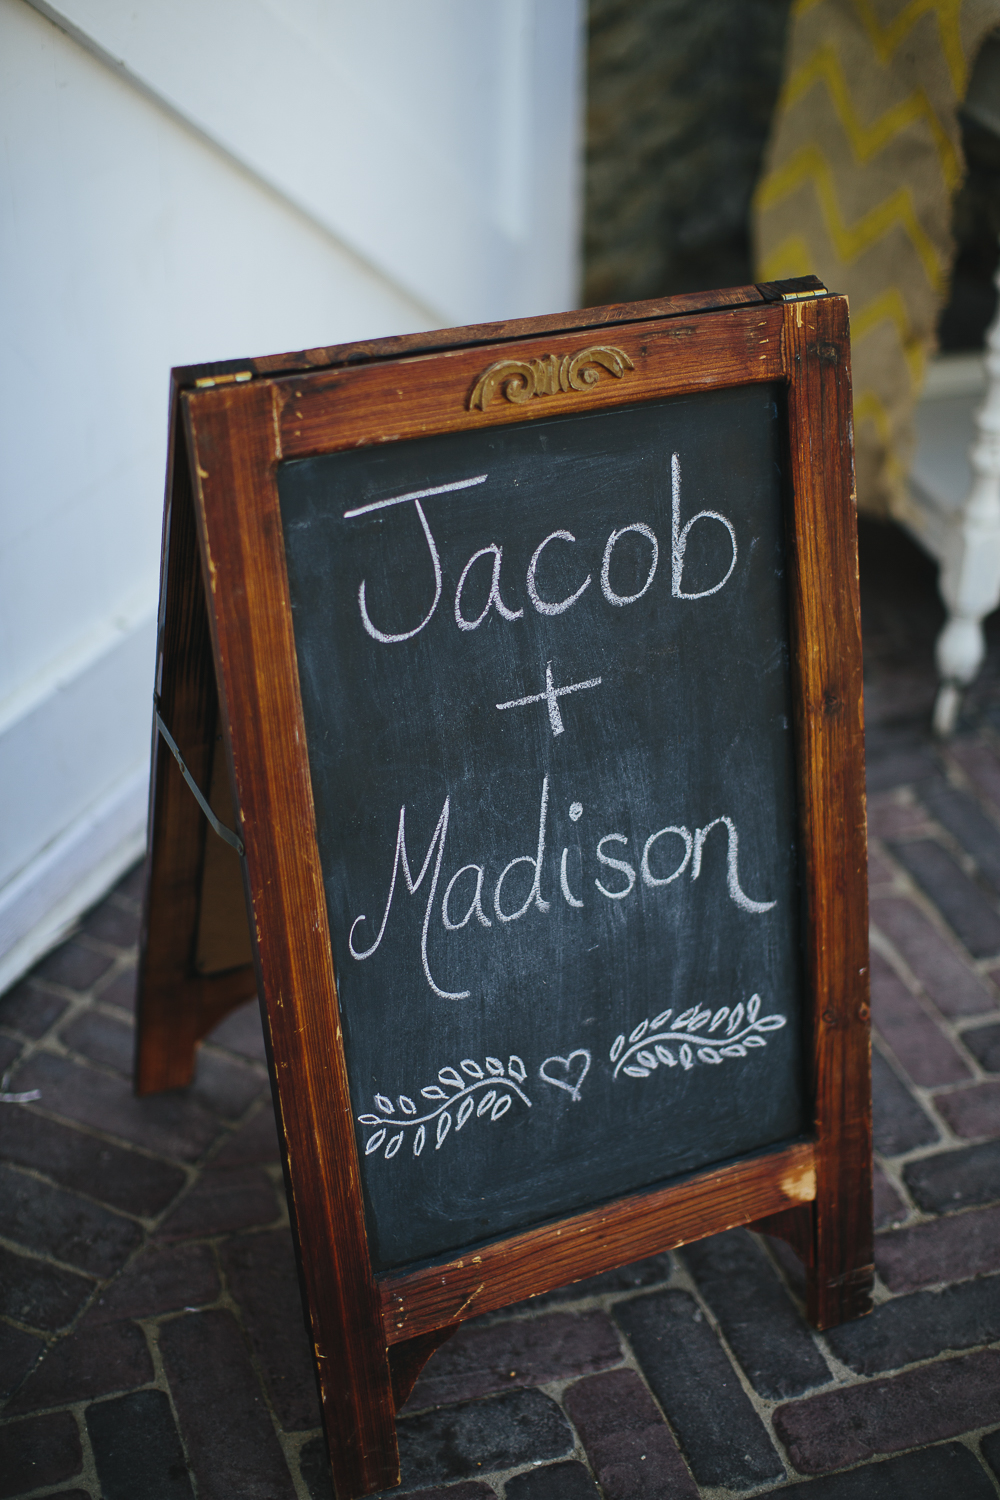 Madison and jacob-4.jpg